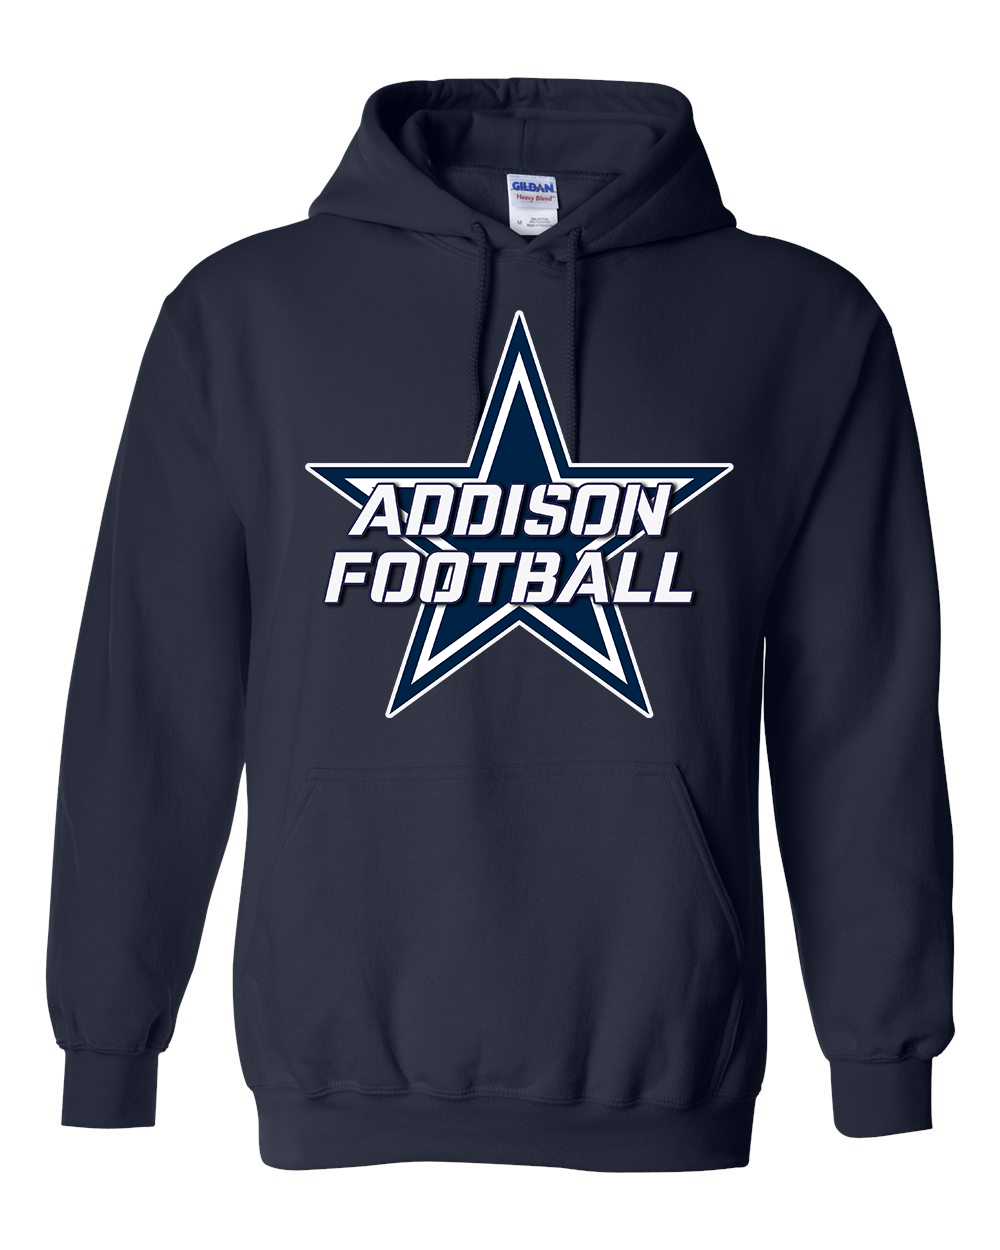 Star Addison Football  -  Hooded Sweatshirt - ADULT